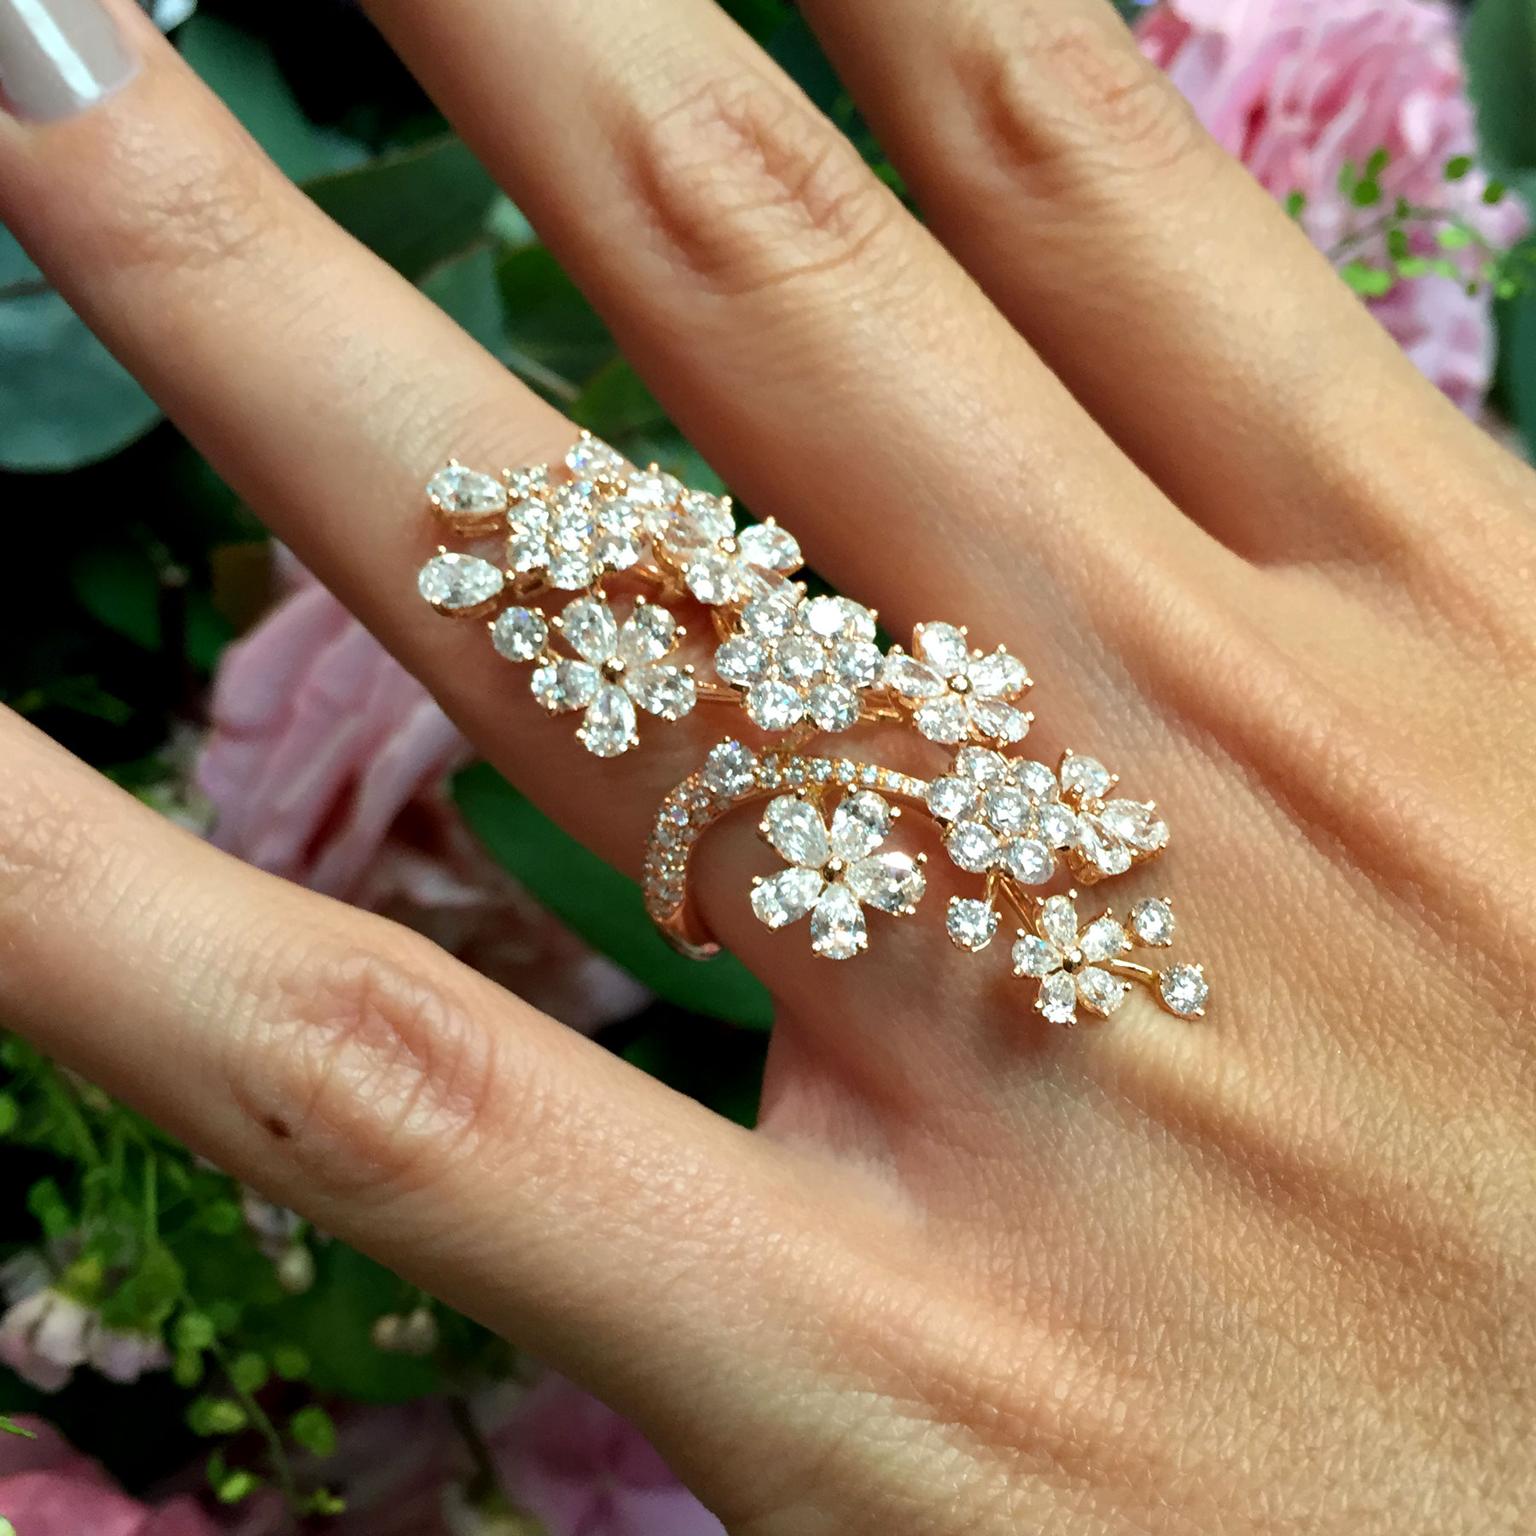 David Morris Cherry Blossom long finger ring on model